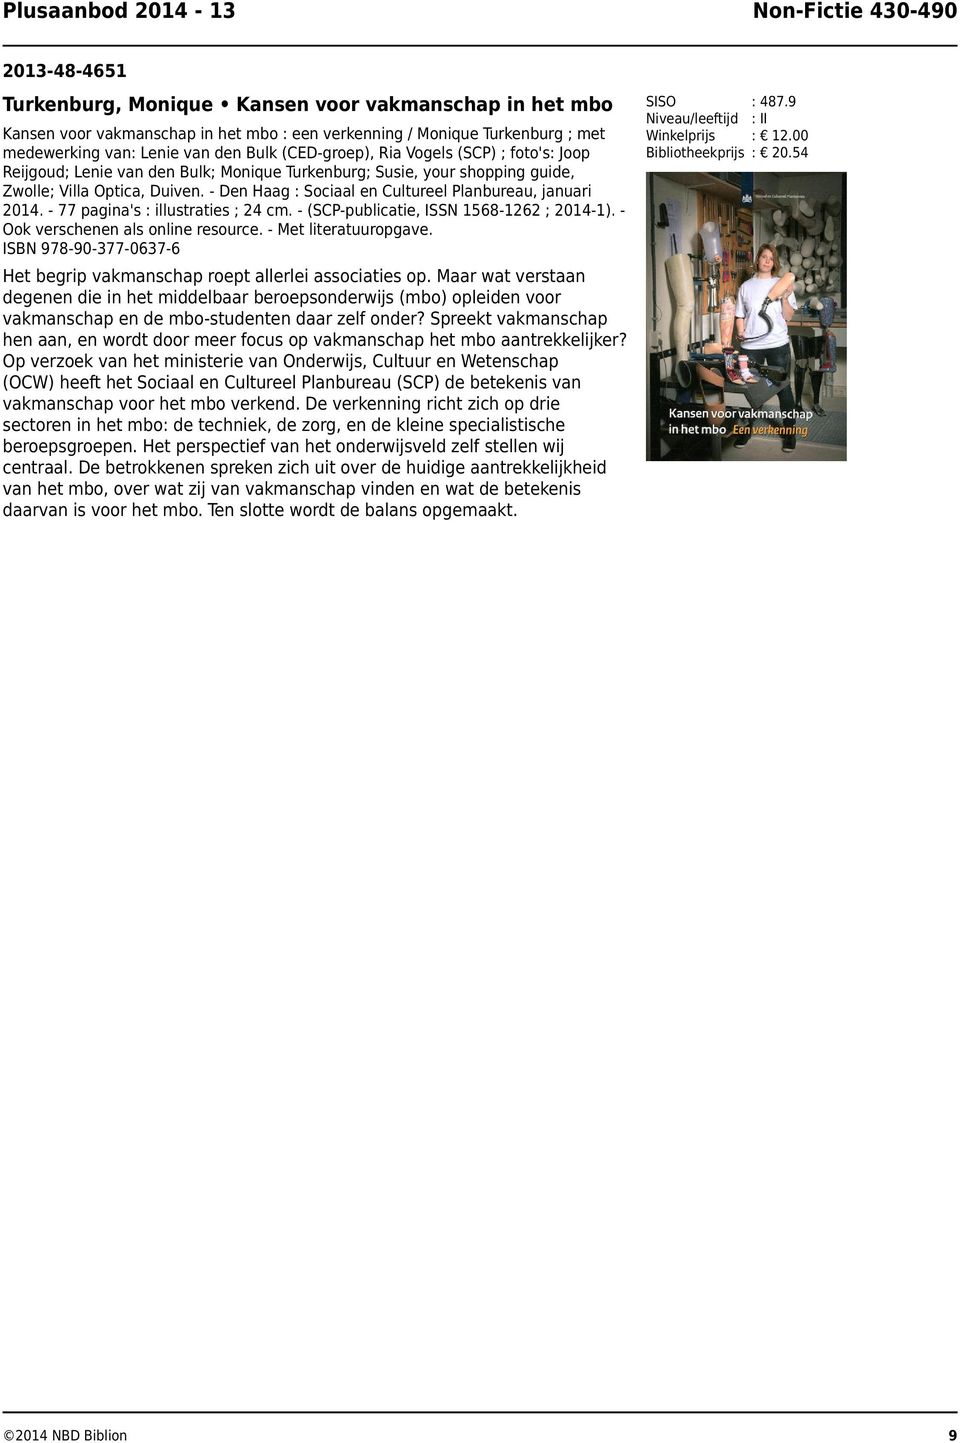 - Den Haag : Sociaal en Cultureel Planbureau, januari 2014. - 77 pagina's : illustraties ; 24 cm. - (SCP-publicatie, ISSN 1568-1262 ; 2014-1). Ook verschenen als online resource.